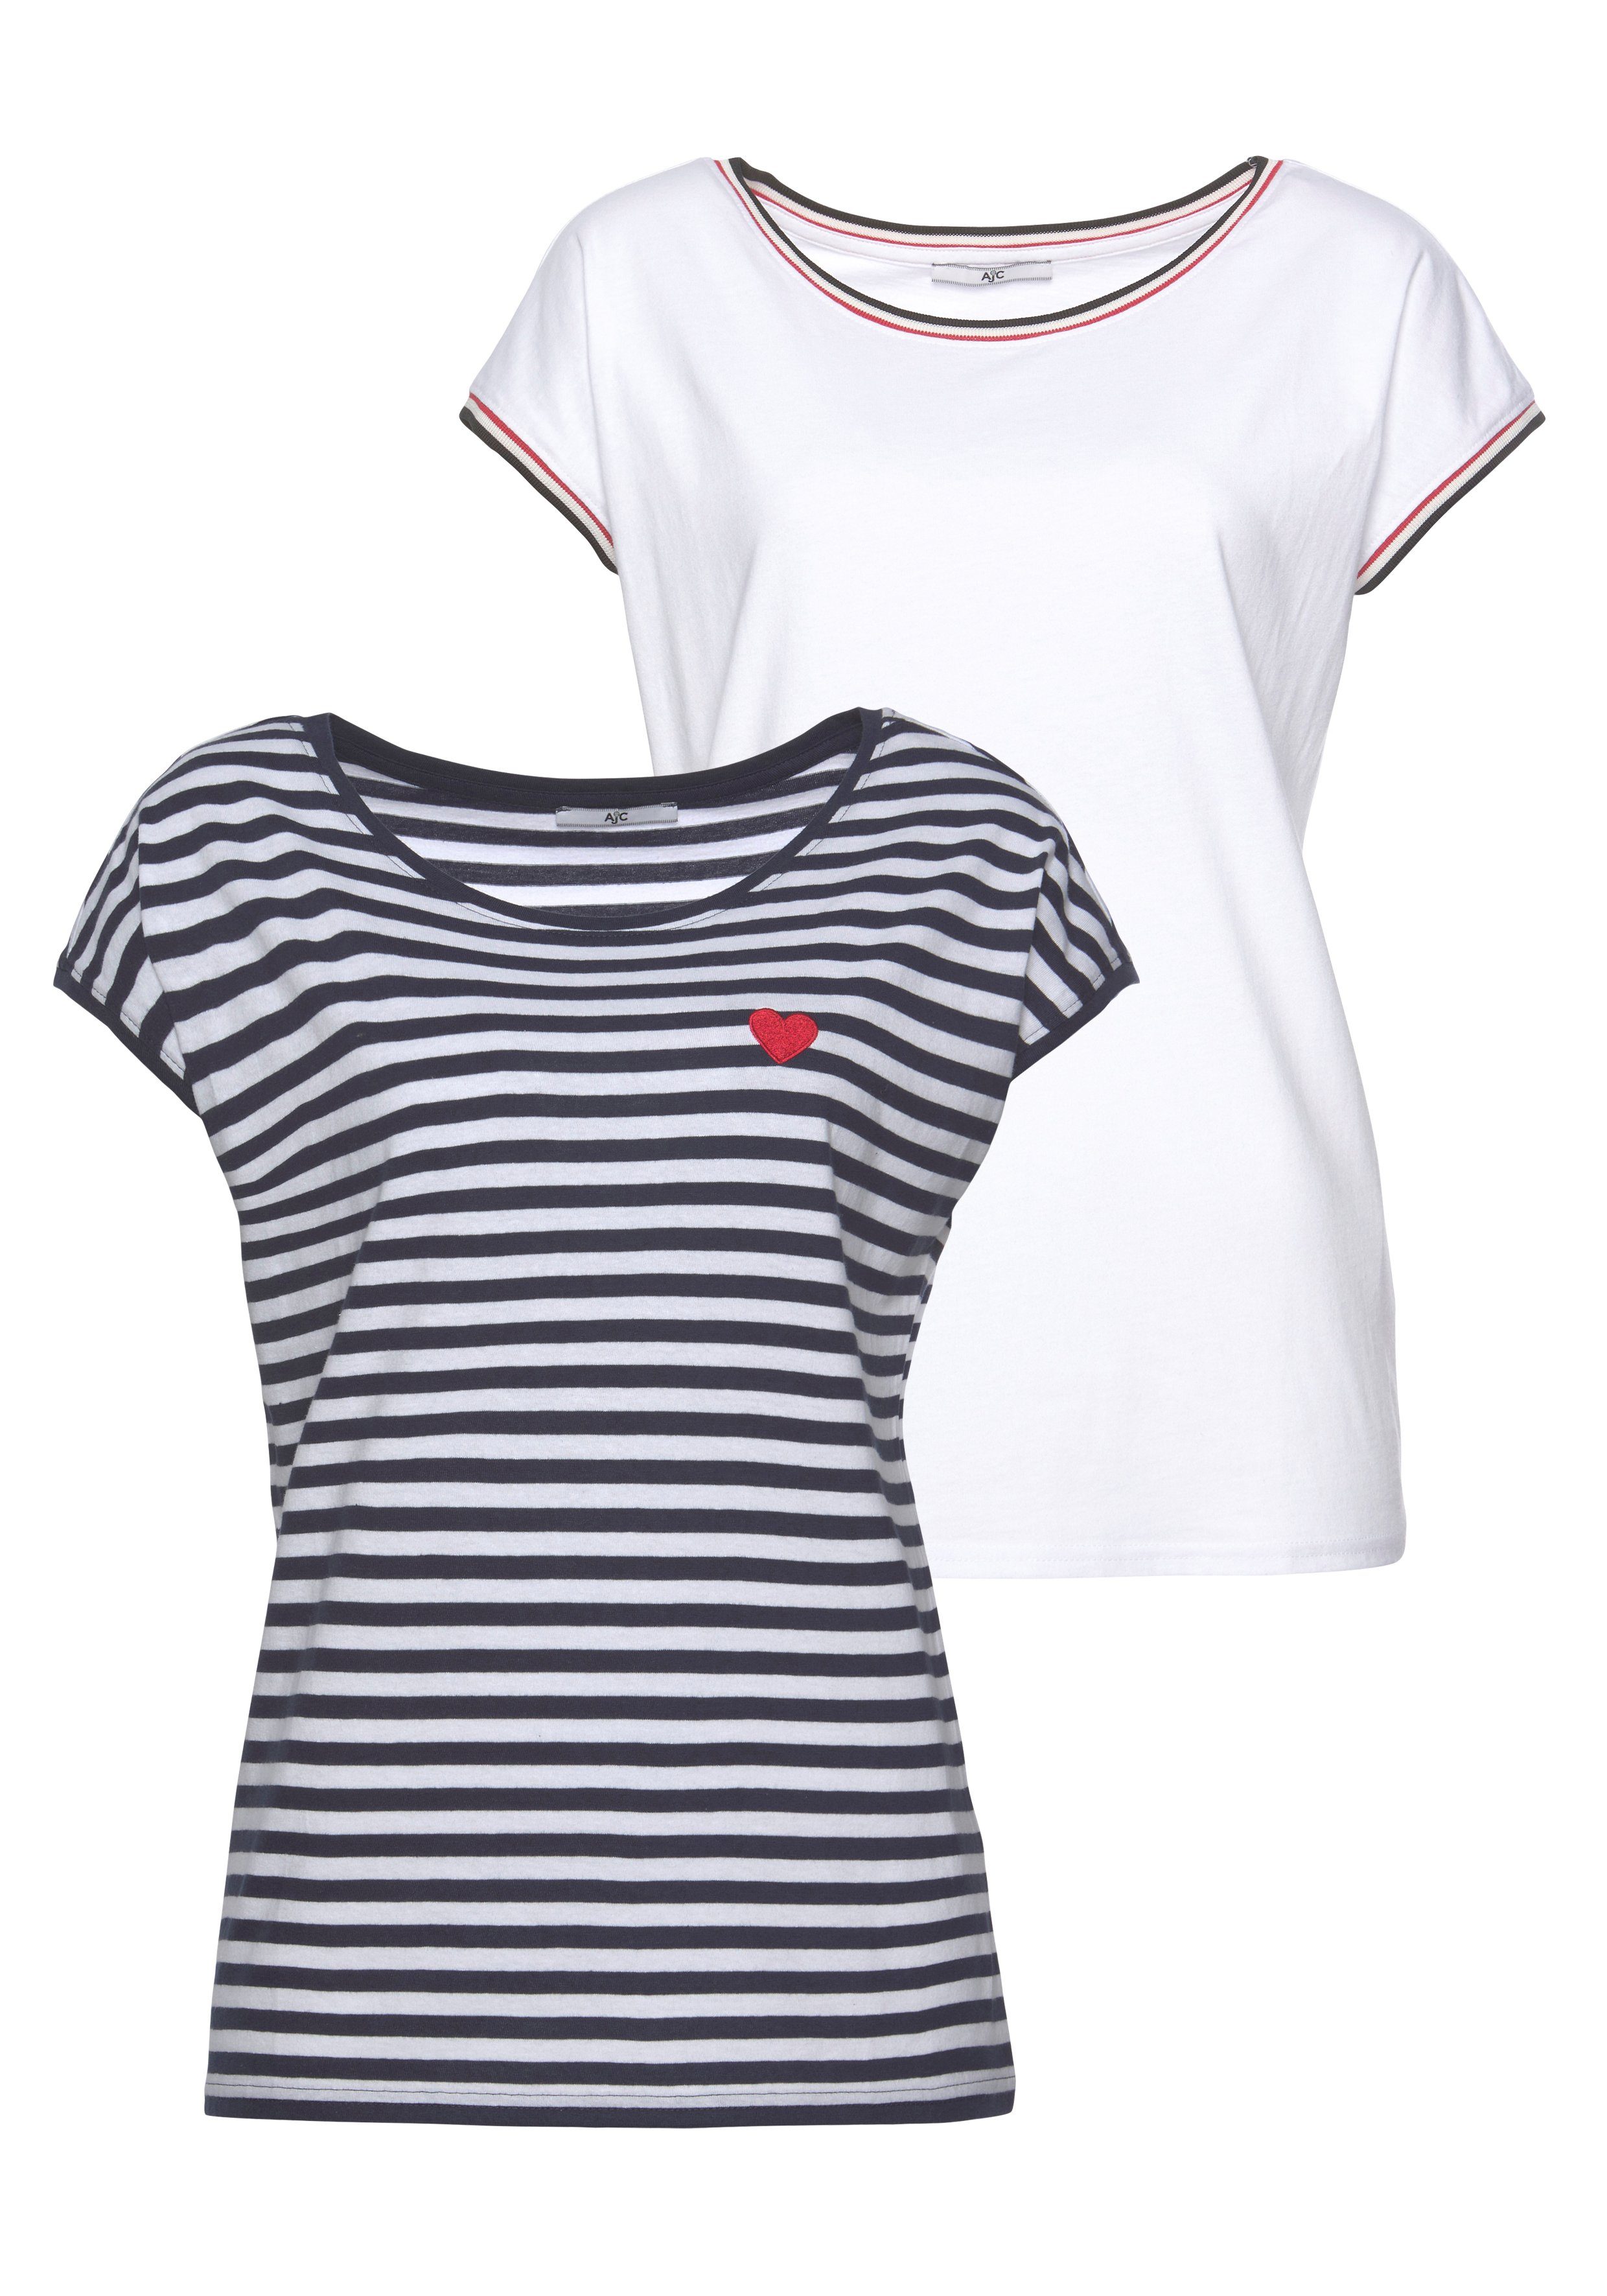 AJC Rundhalsshirt im Doppelpack gestreift mit kleiner Stickerei + solid marine-weiß | T-Shirts